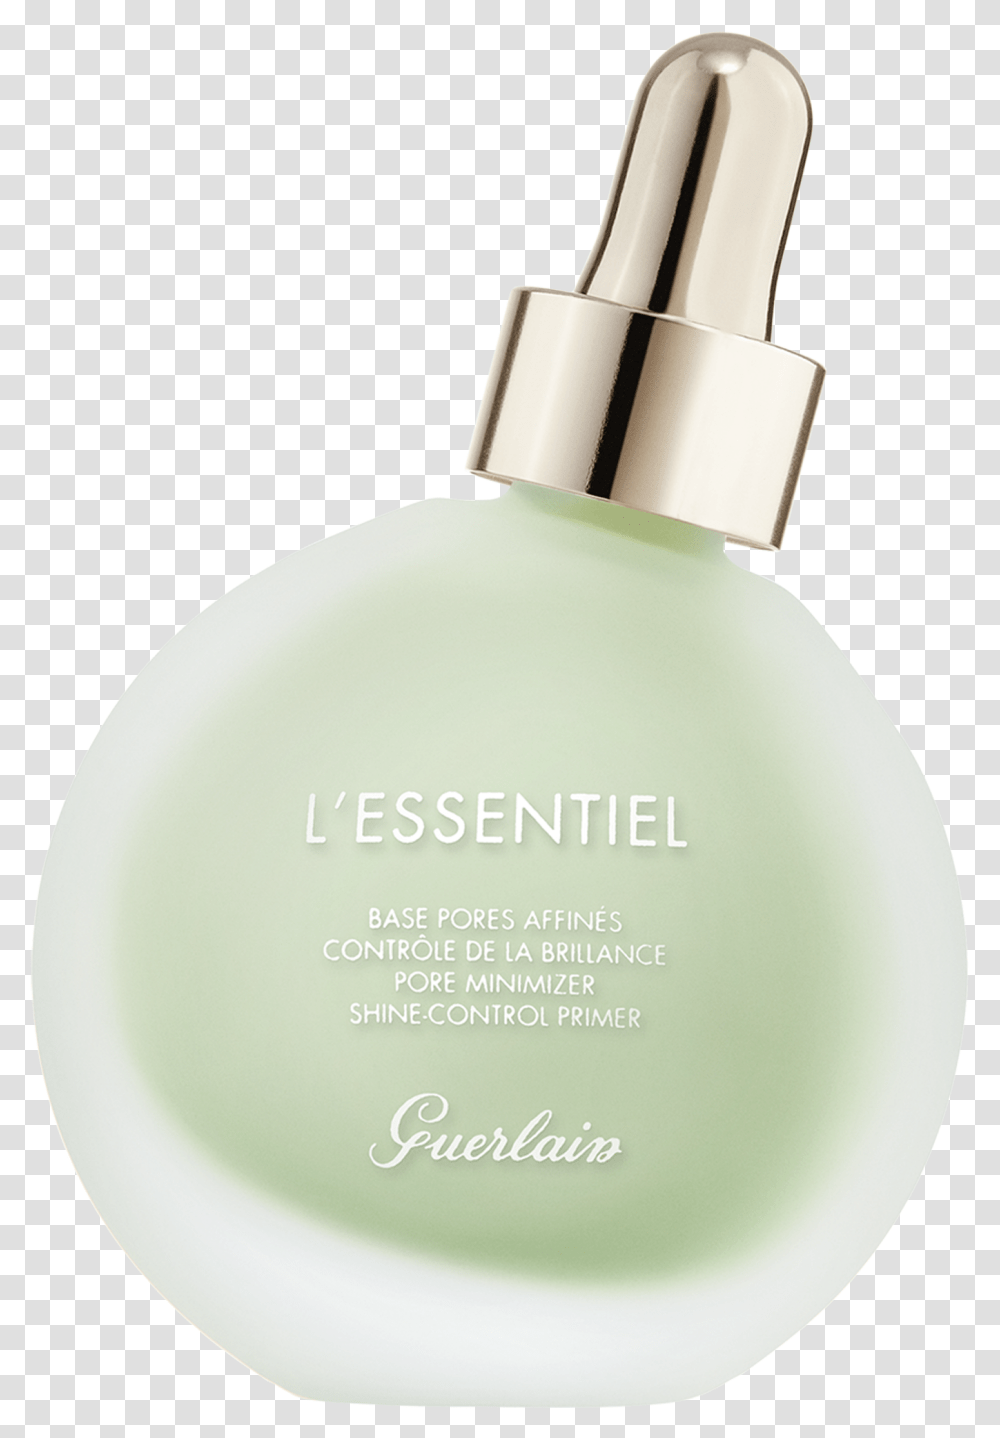 Mon Guerlain Perfume, Bottle, Lamp, Cosmetics, Lotion Transparent Png